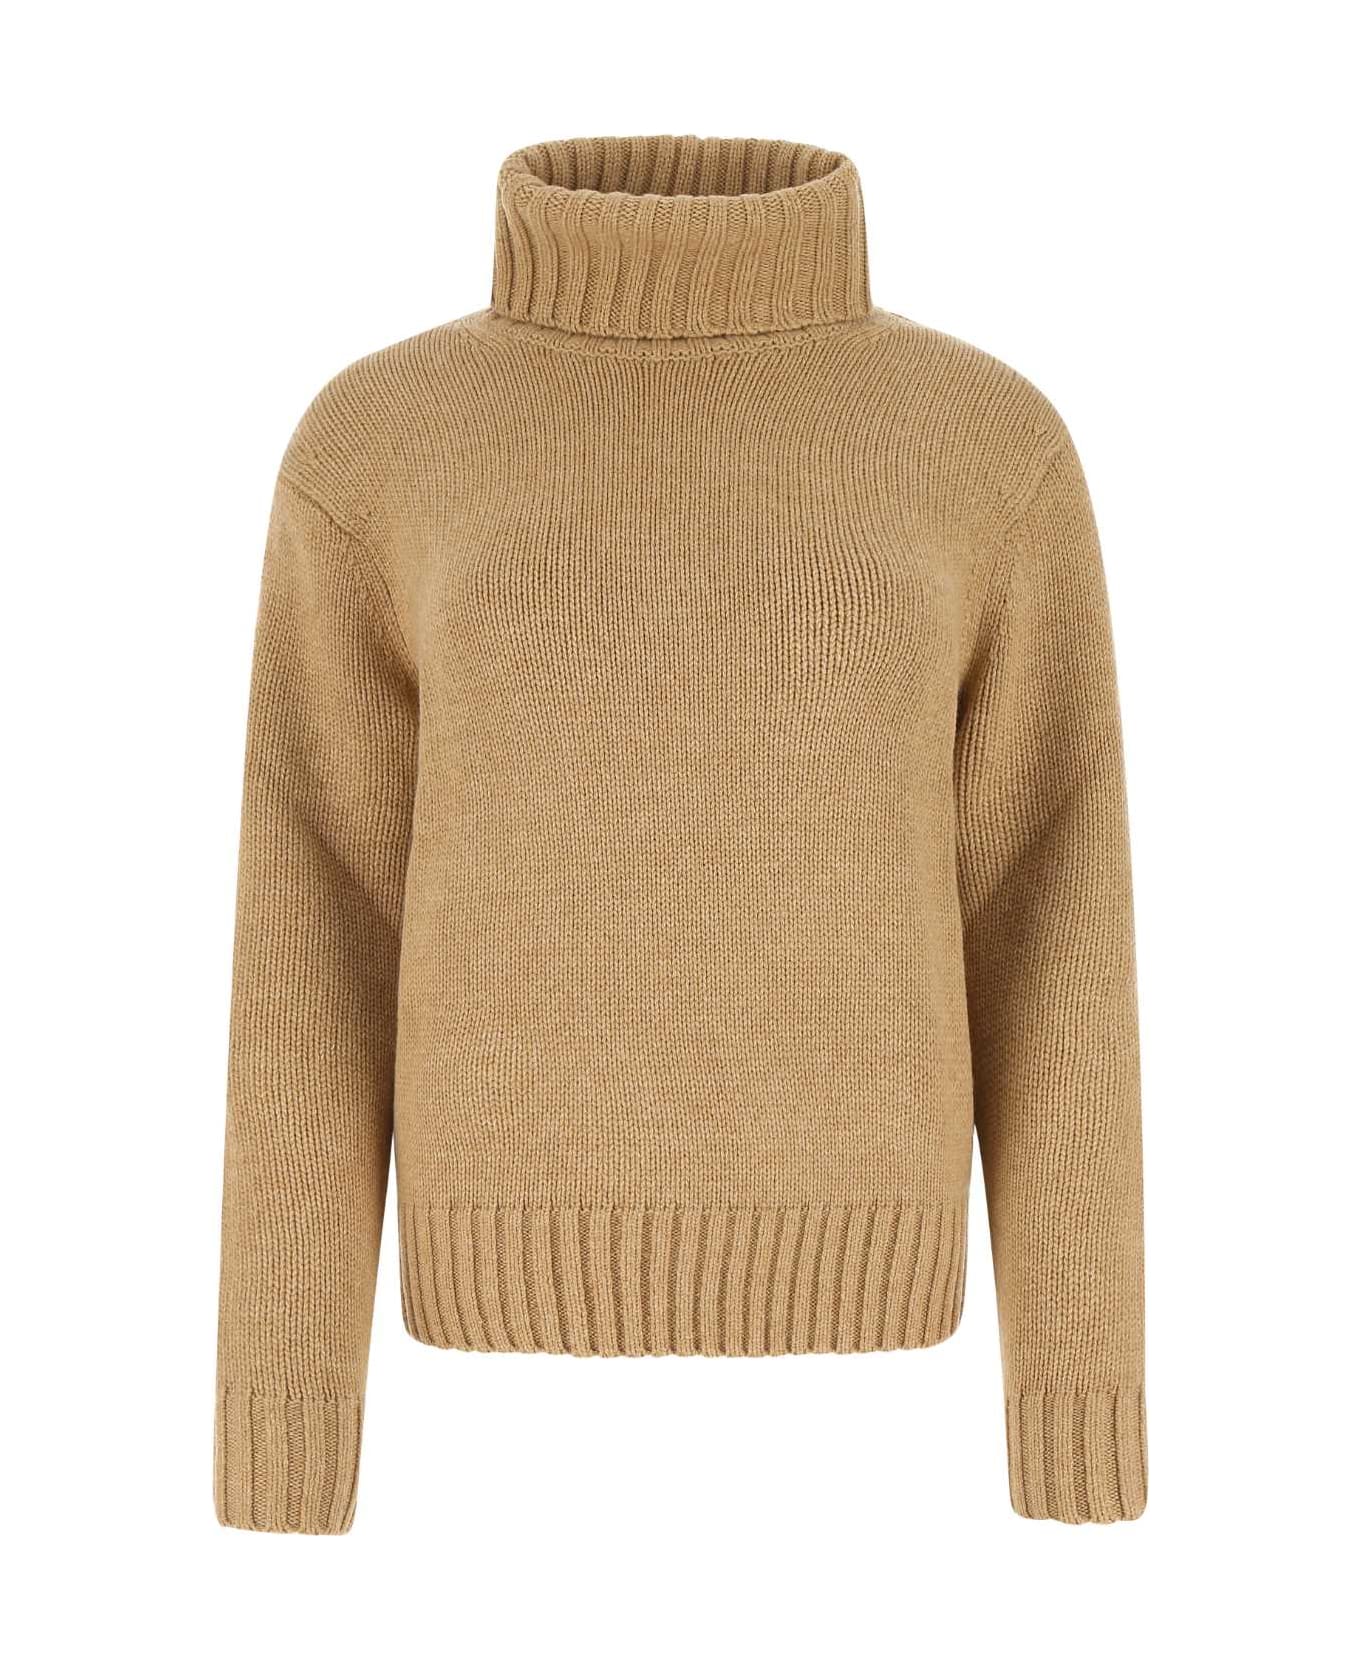 Polo Ralph Lauren Camel Wool Sweater - 002